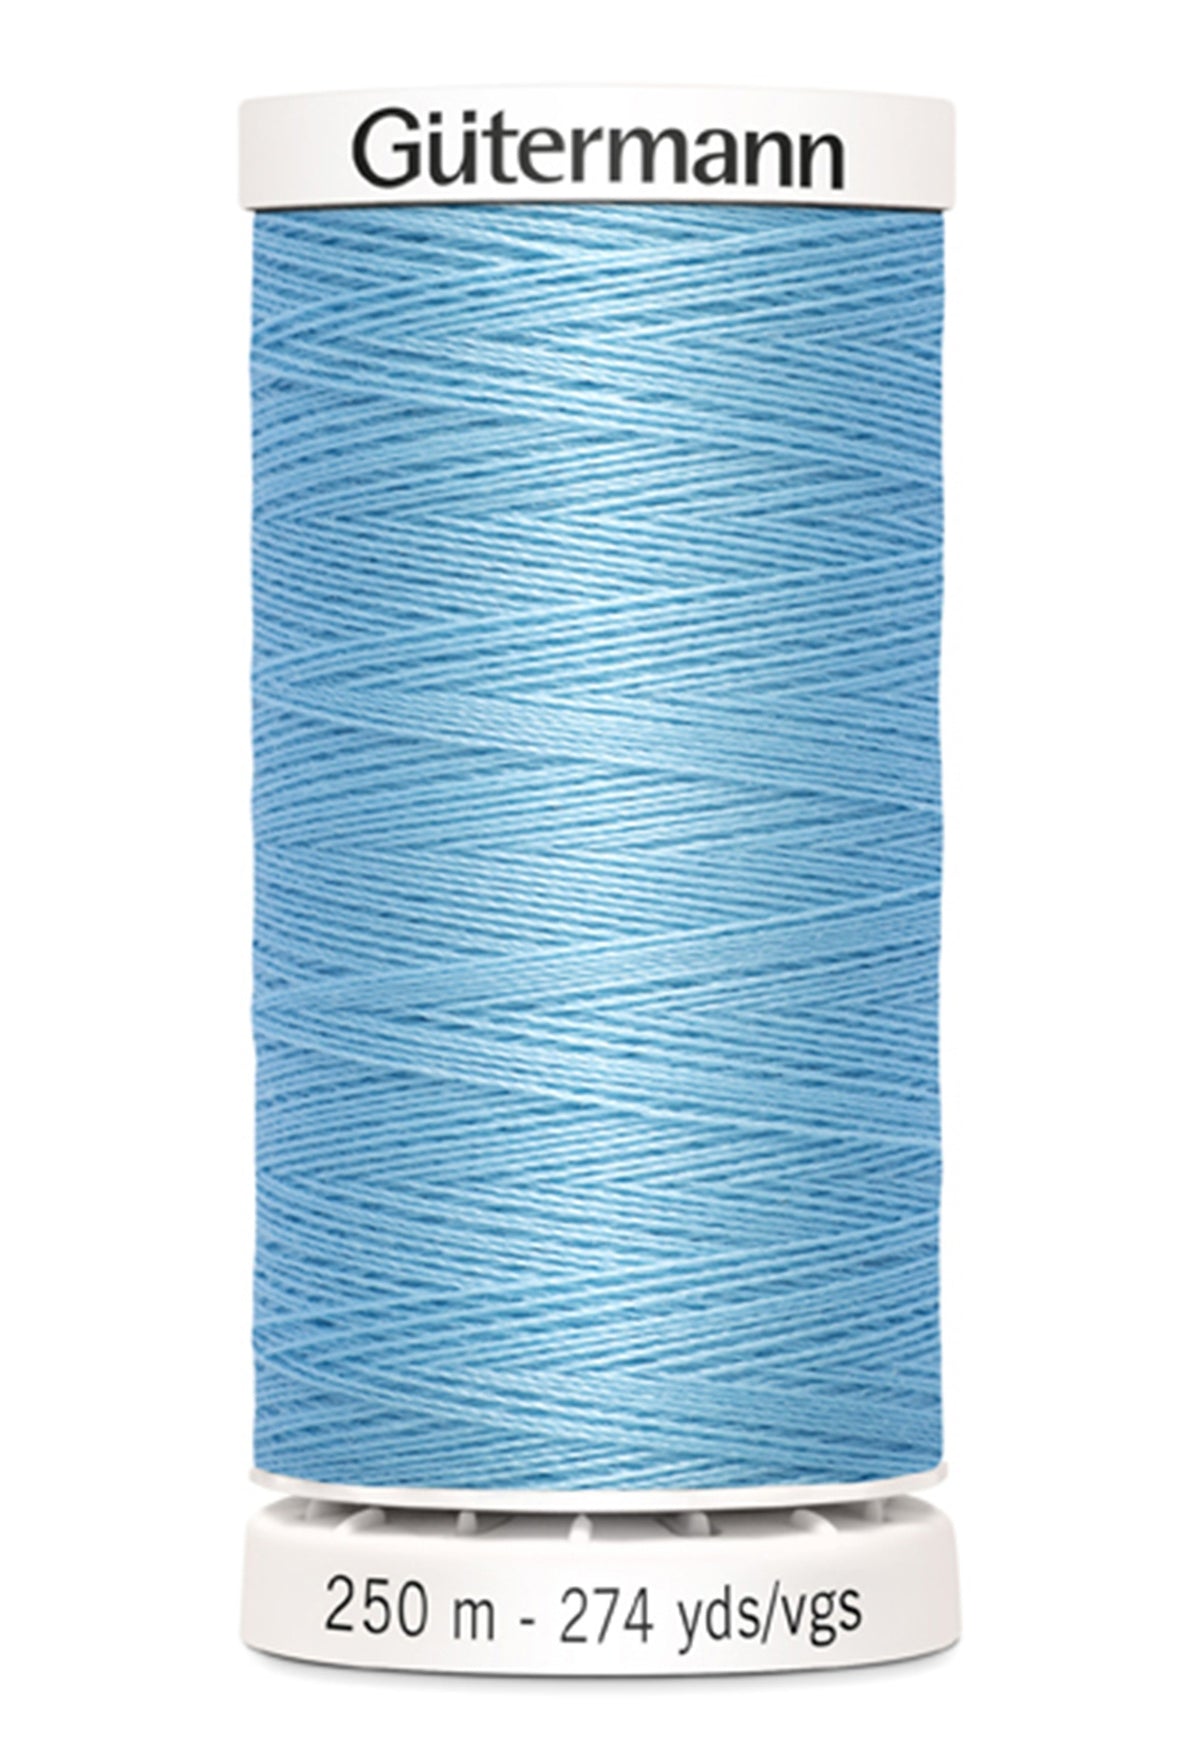 Gutermann Sew-All Polyester  209 Powder Blue  250m/273yd